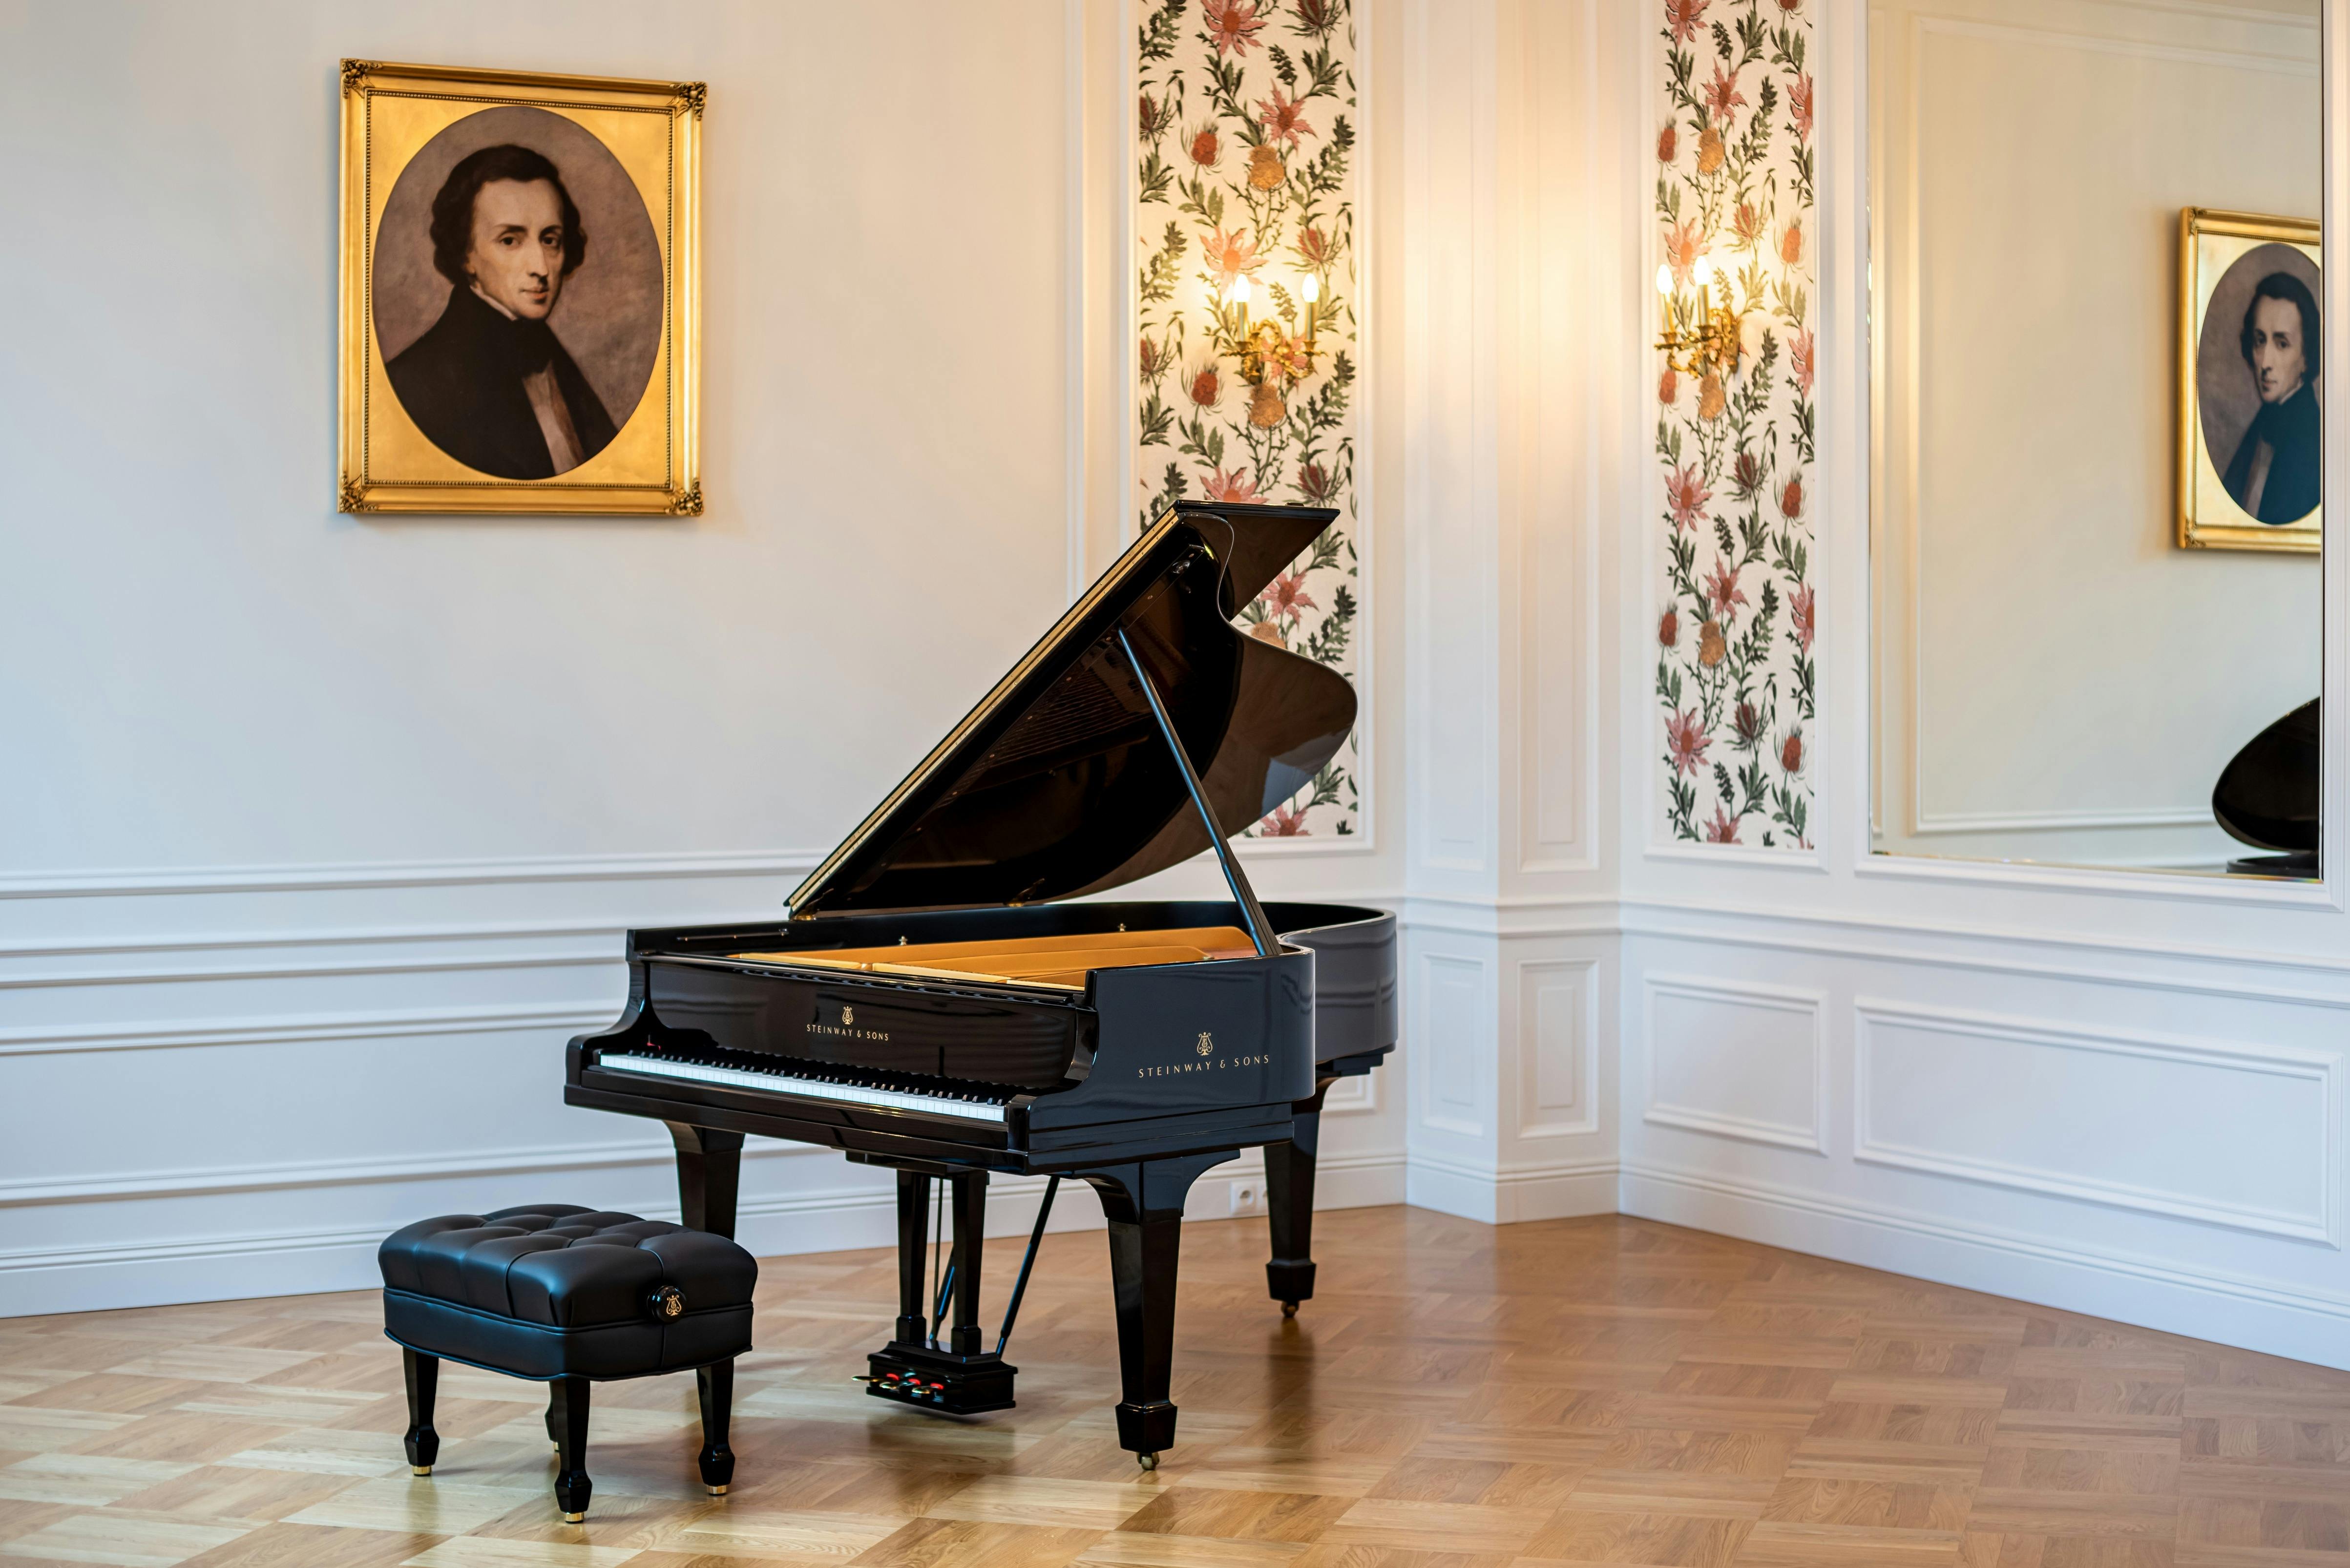 Kaartjes voor Chopin-concerten in de Warschau Fryderyk-concertzaal